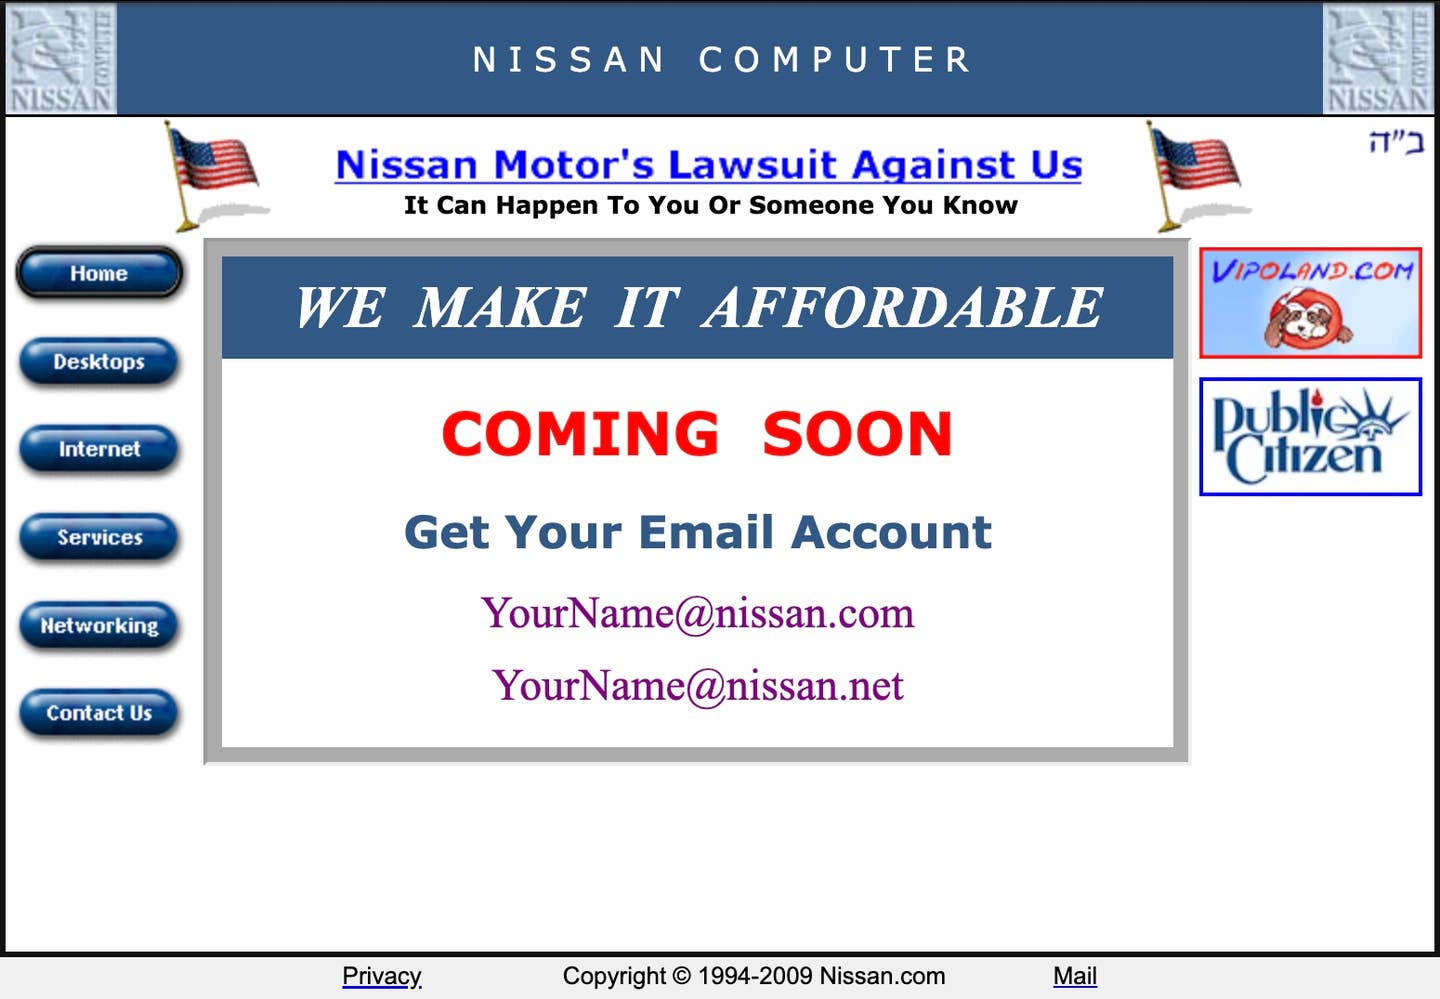 Domovská stránka Nissan.com přibližně 21. prosince 2009